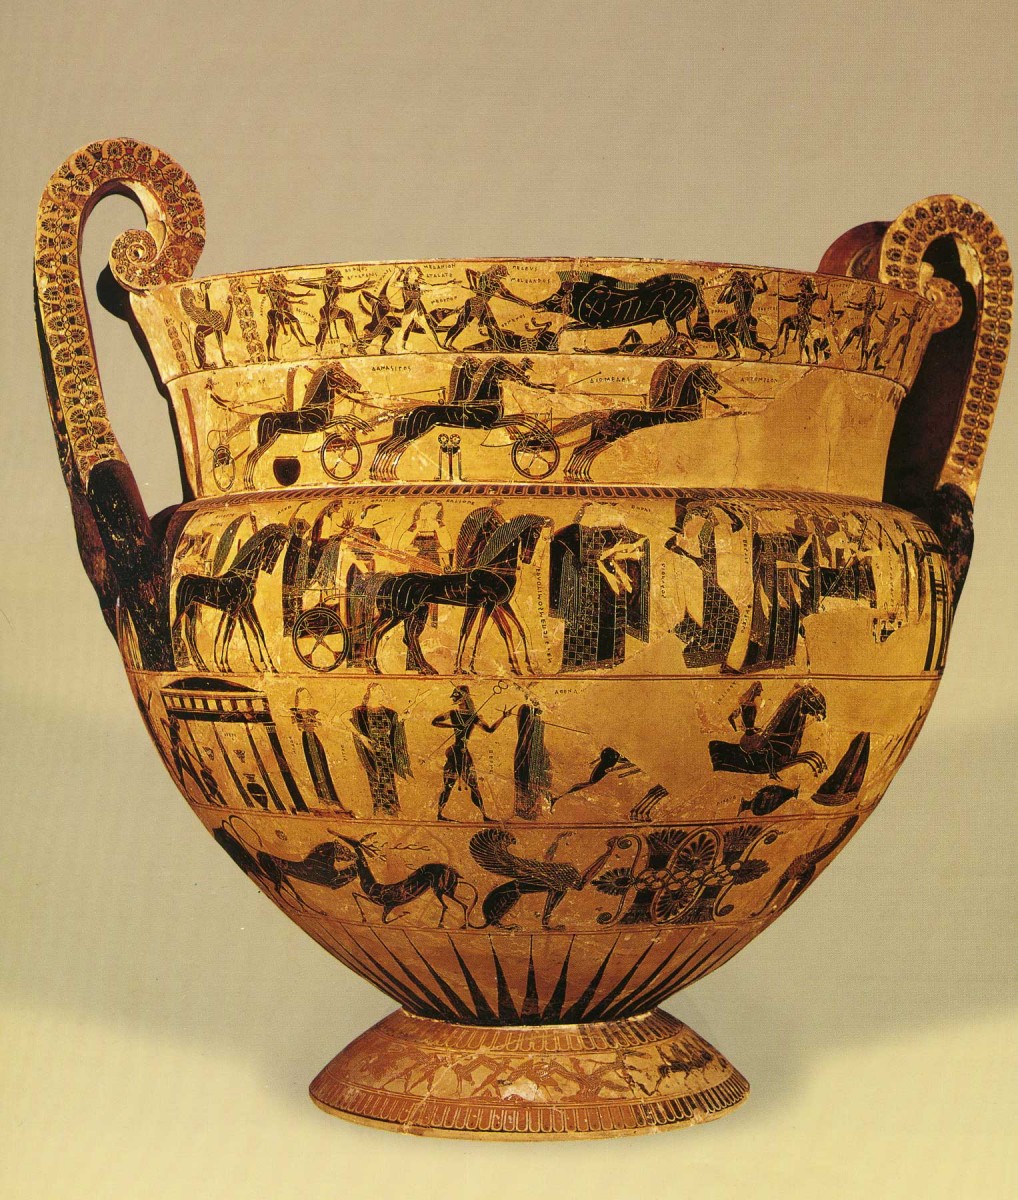 Το «εποίησεν» στην αρχαία ελληνική αγγειογραφία